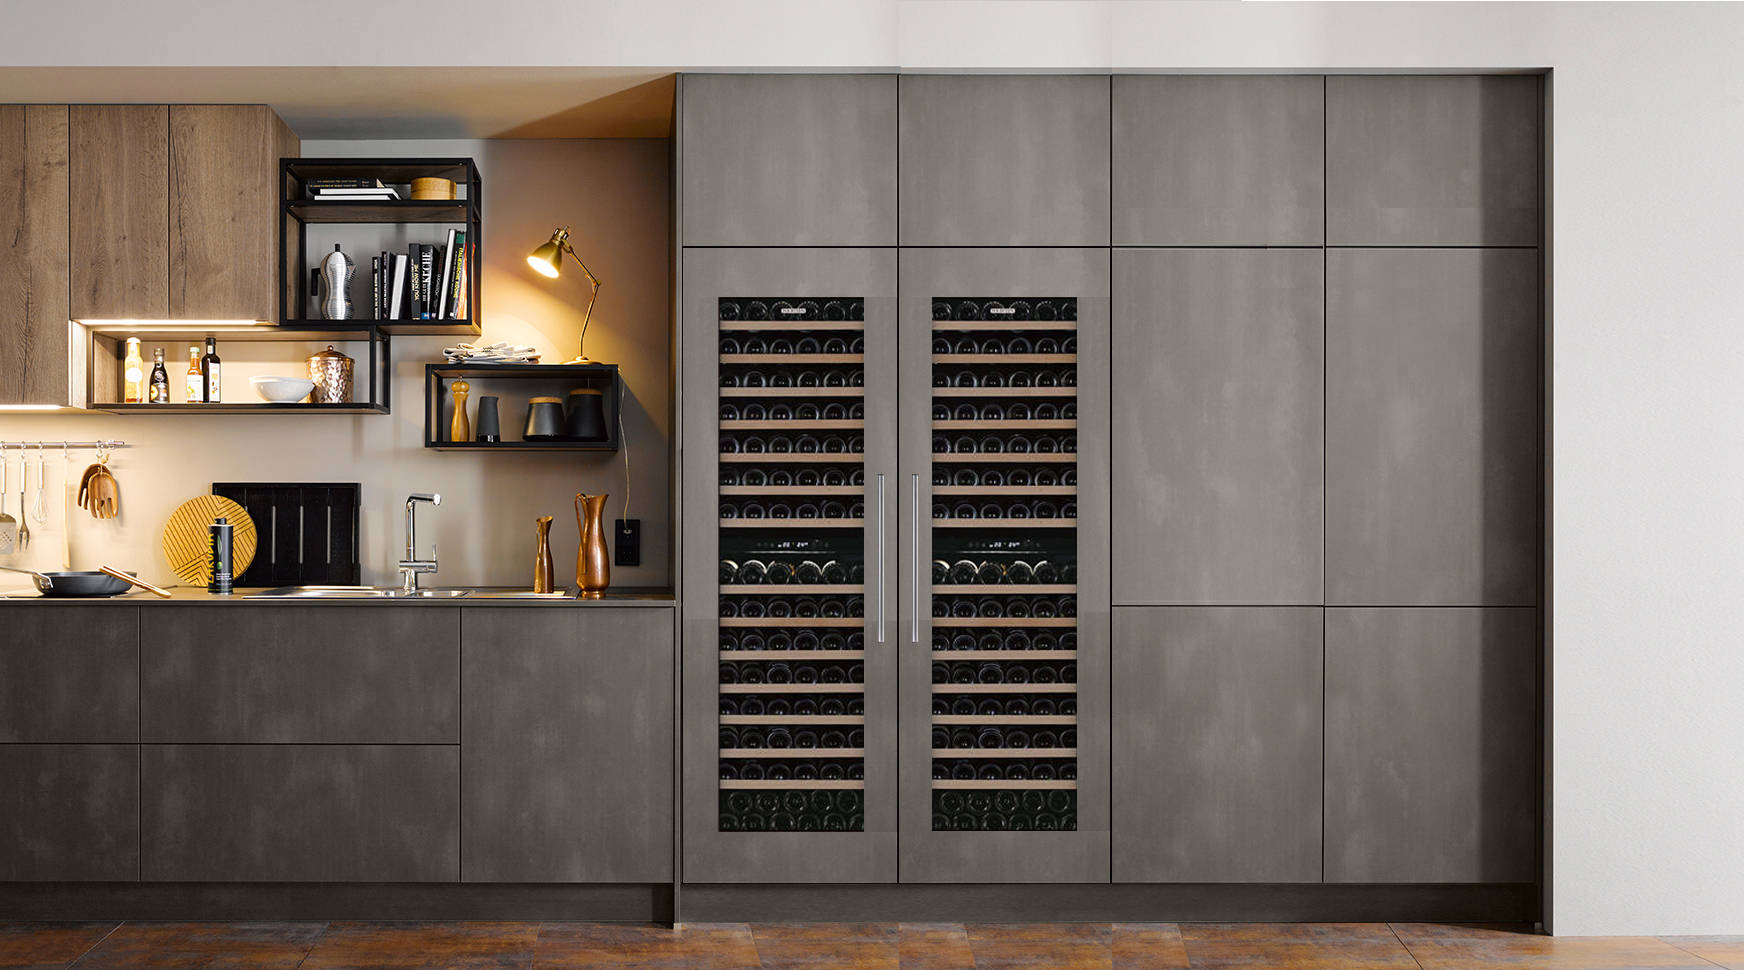 至美厨房完美匹配106dt嵌入式酒柜创造格调的灵动空间